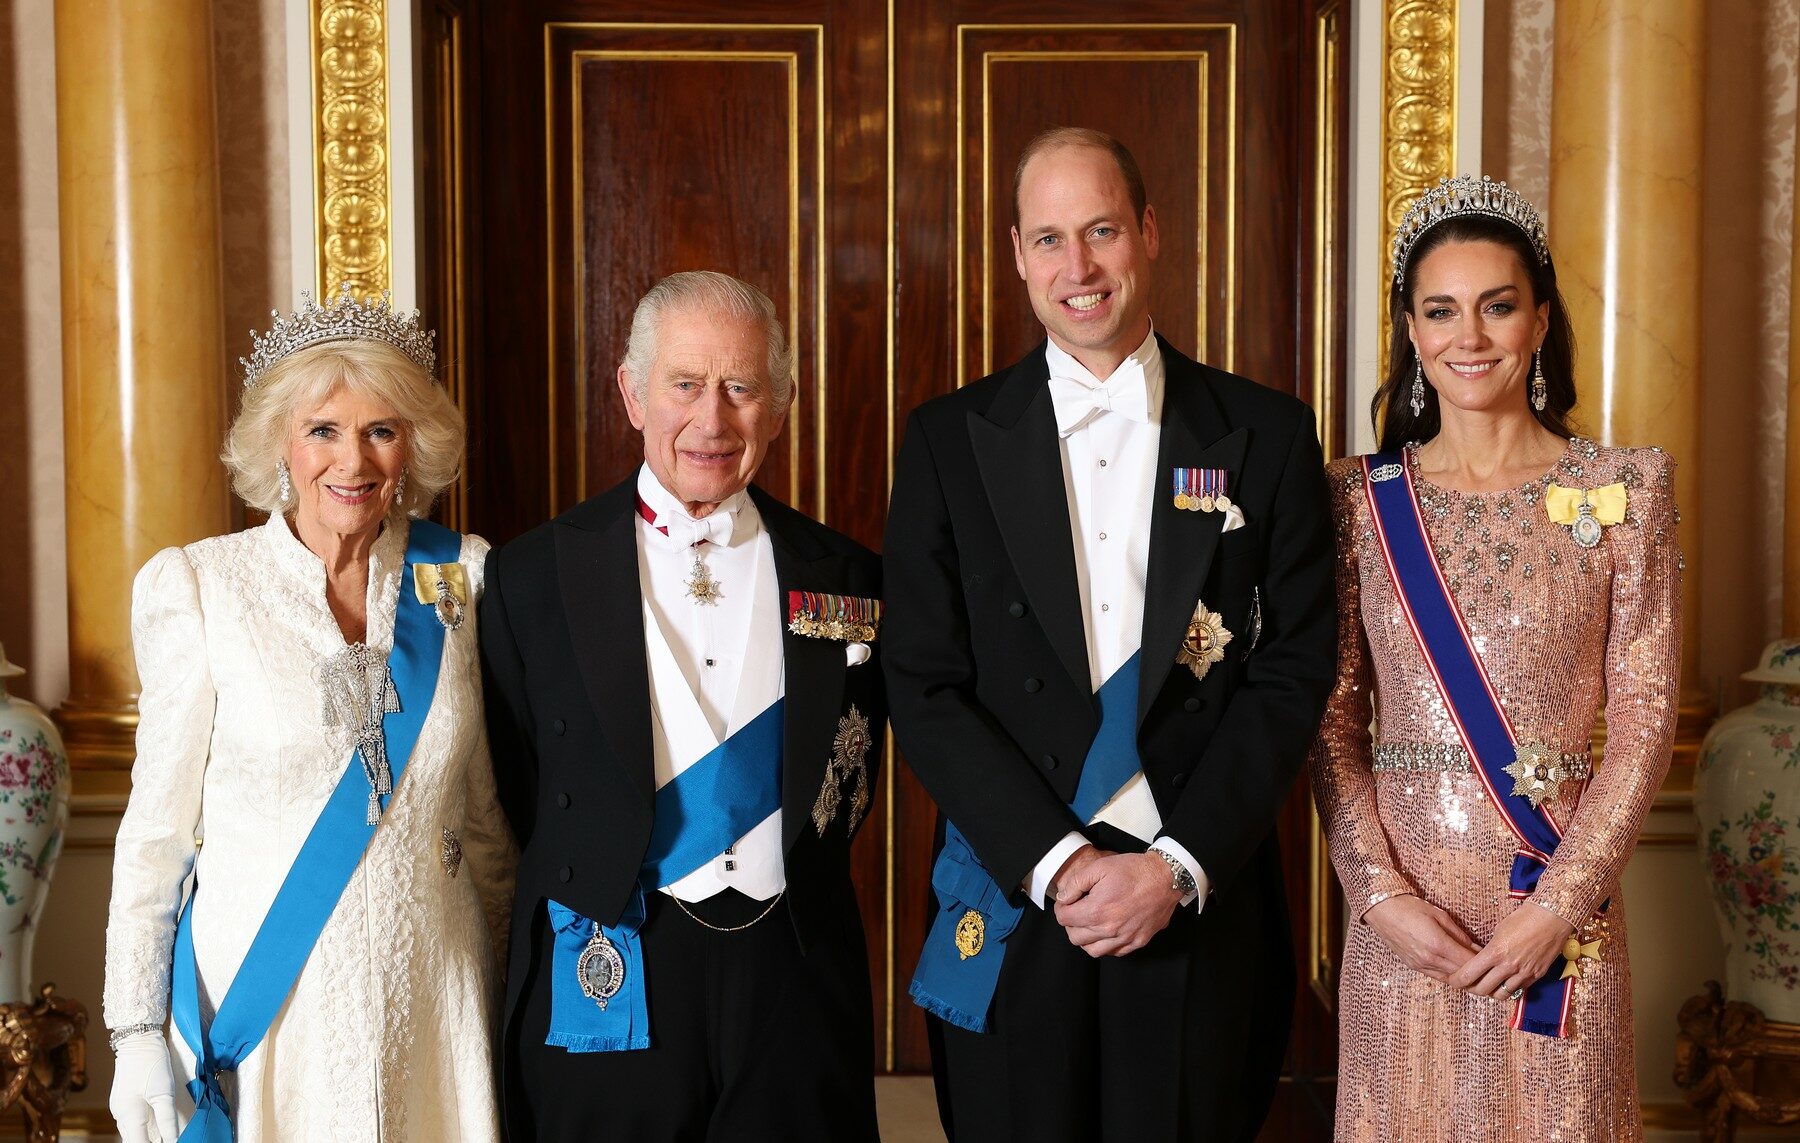 kraljevska obitelj kralj princeza hello magazine croatia pokloni u briatnskoj kraljevskoj obitelji